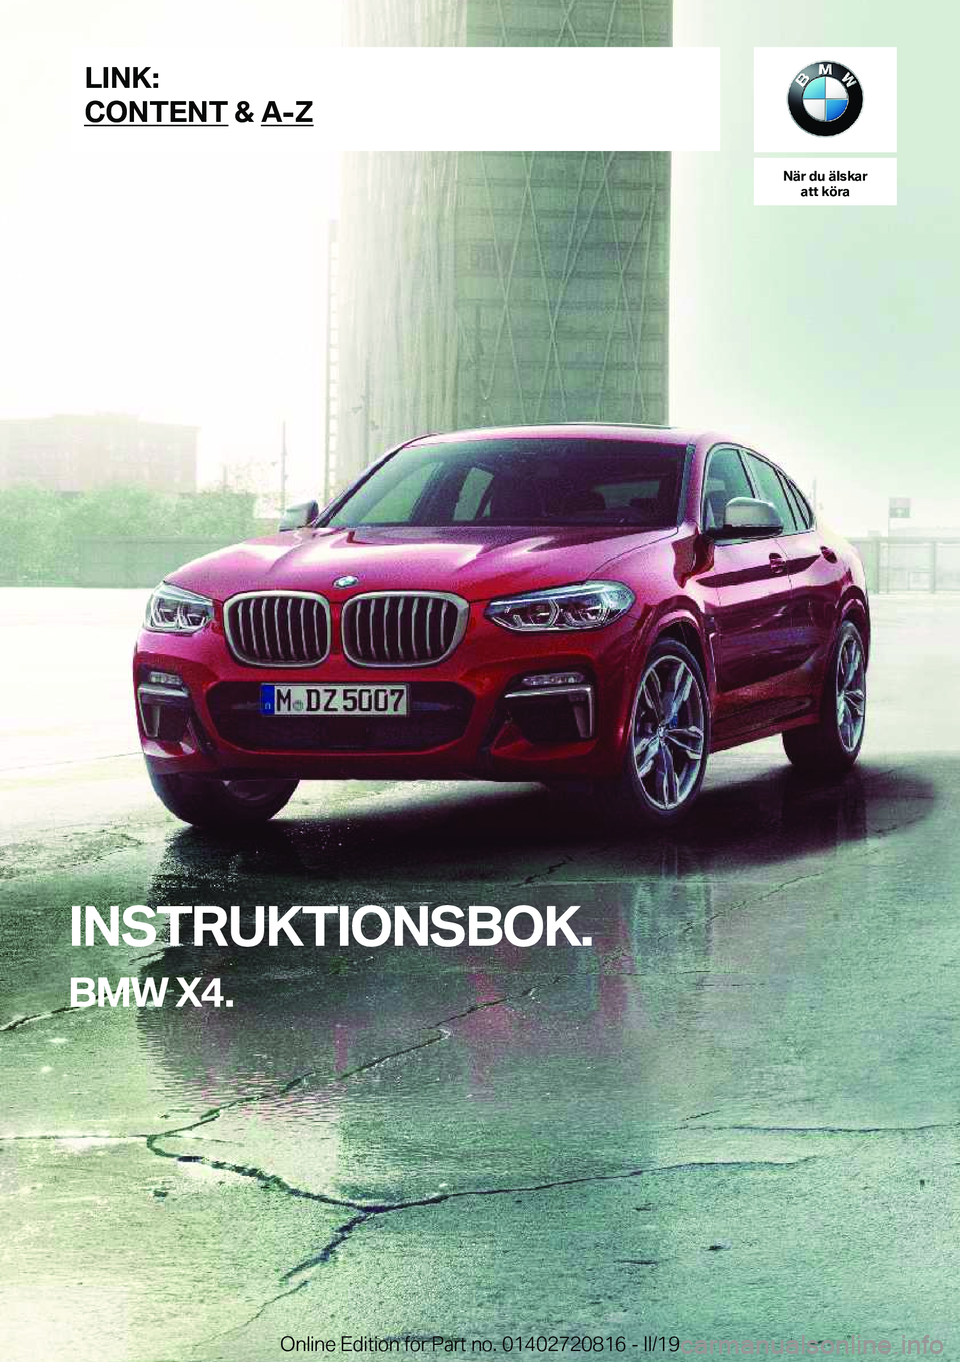 BMW X4 2019  InstruktionsbÖcker (in Swedish) �N�ä�r��d�u��ä�l�s�k�a�r�a�t�t��k�